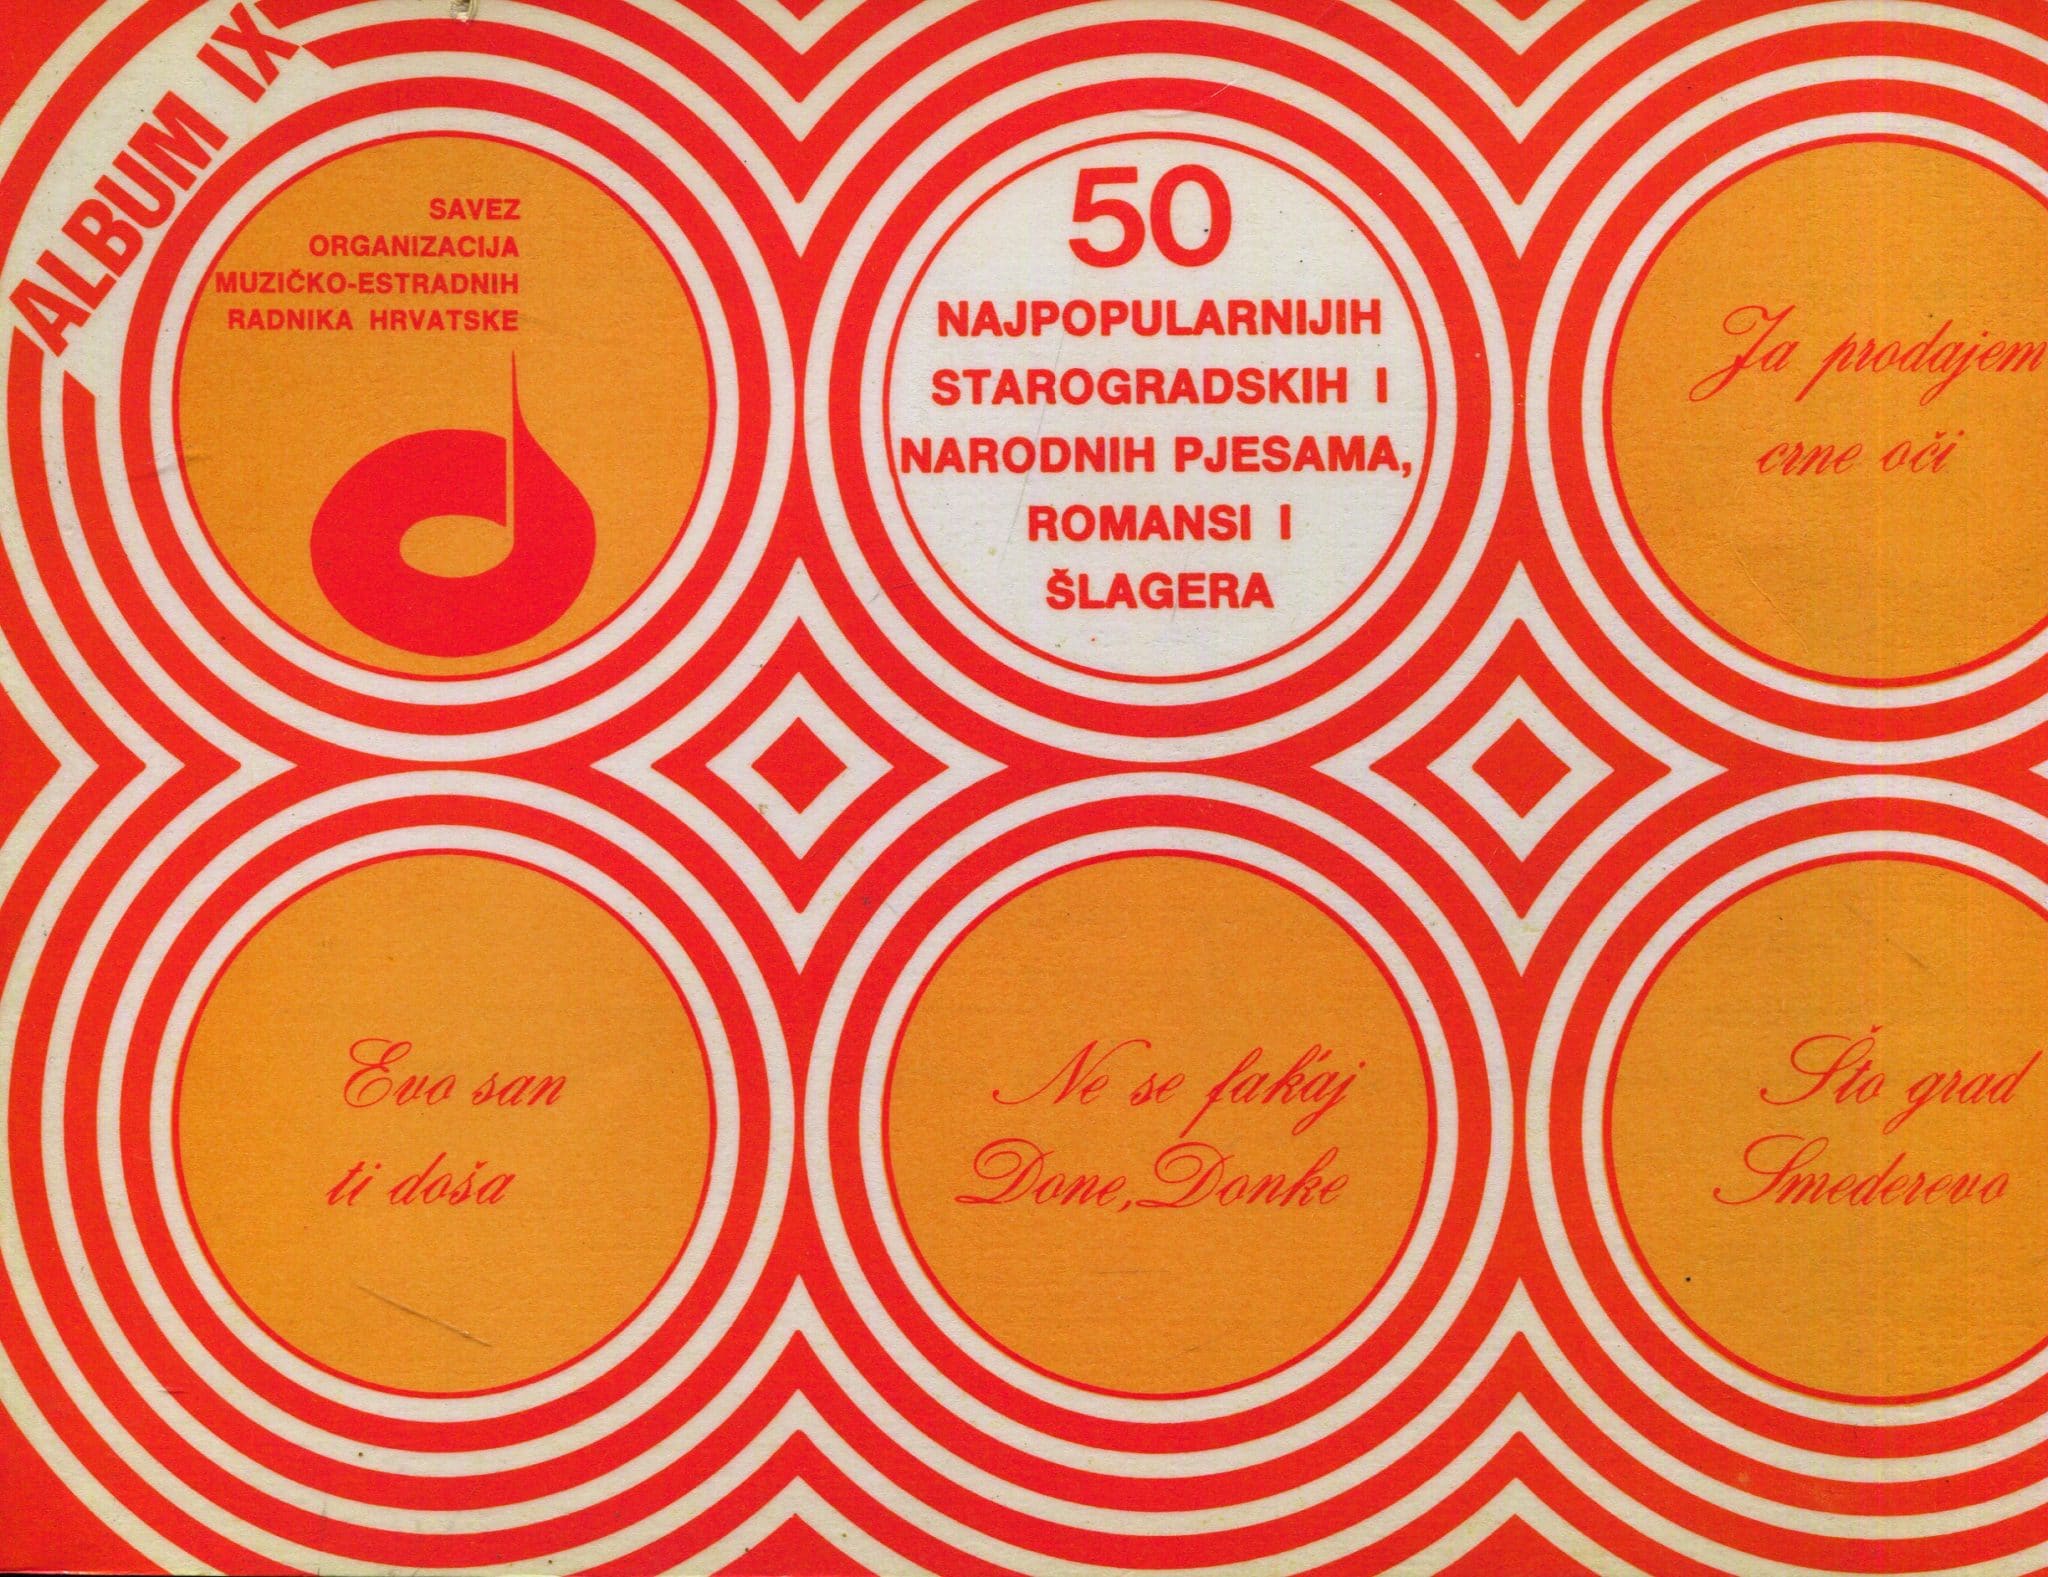 50 najpopularnijih starogradskih i narodnih pjesama, romansi i šlagera (album IX) Krešimir Filipčić i Zvonko Palošek